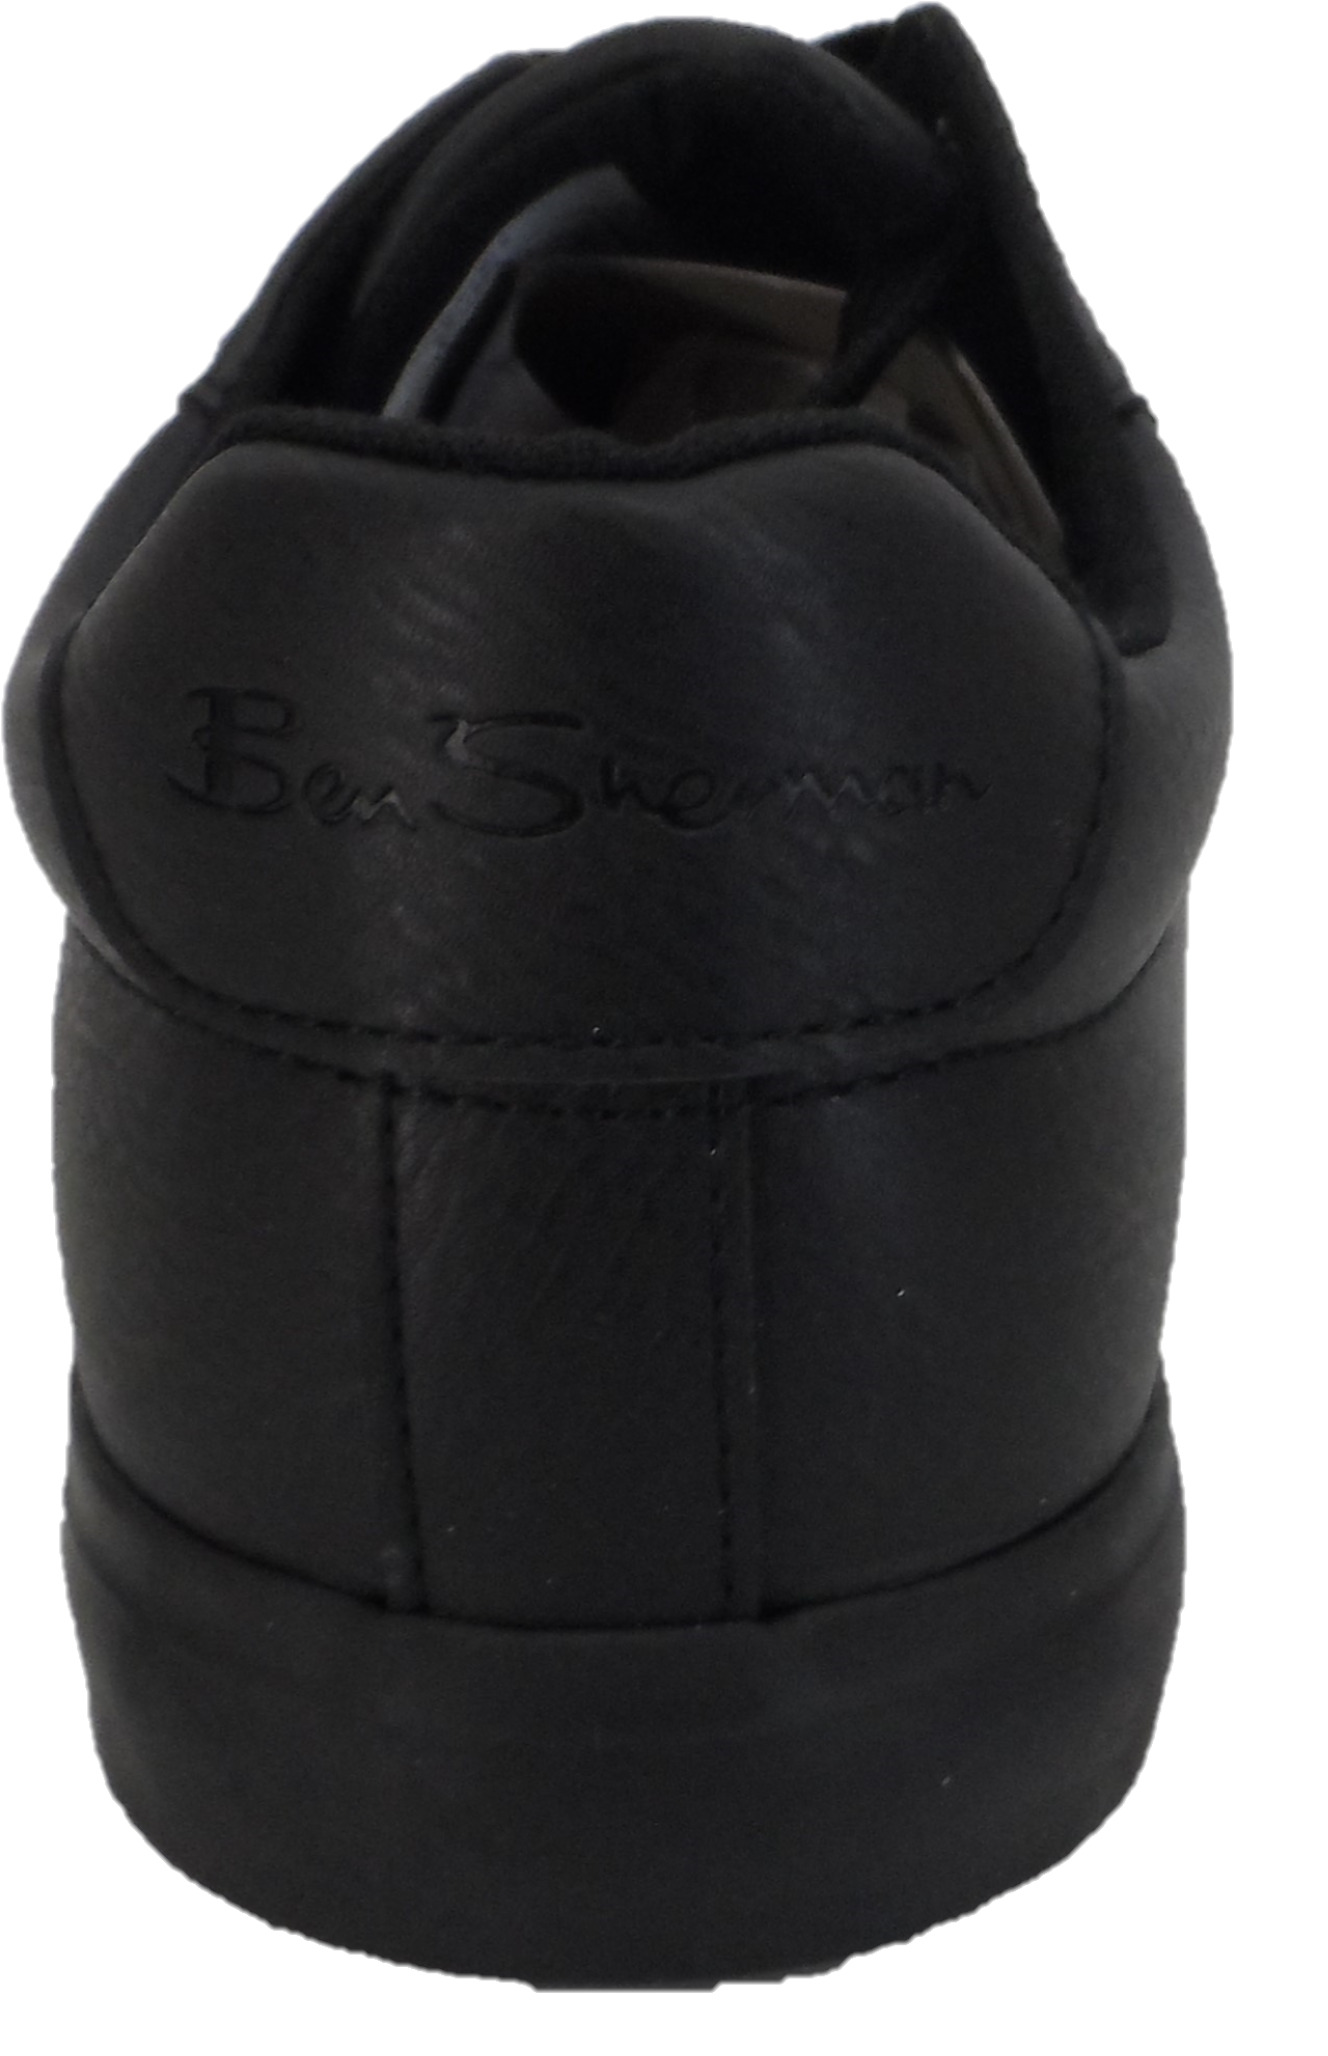 حذاء Ben Sherman الرياضي الرجالي ذو اللون الأسود